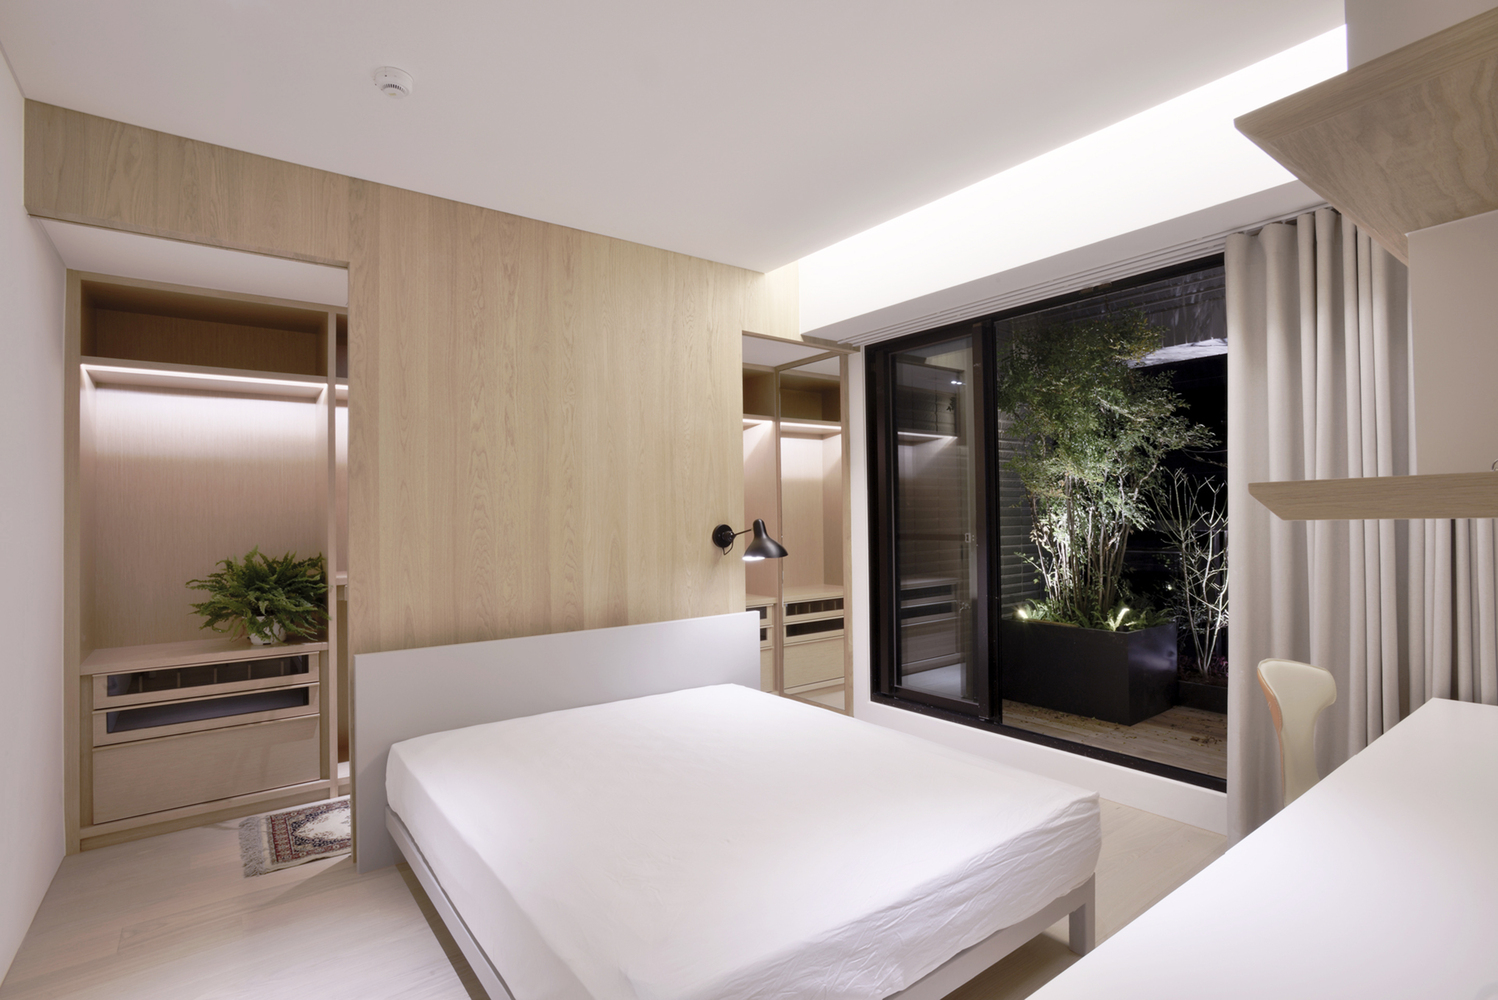 Để bớt lạnh do màu trắng, phòng ngủ kết hợp với gỗ và ban công nhiều cây xanh